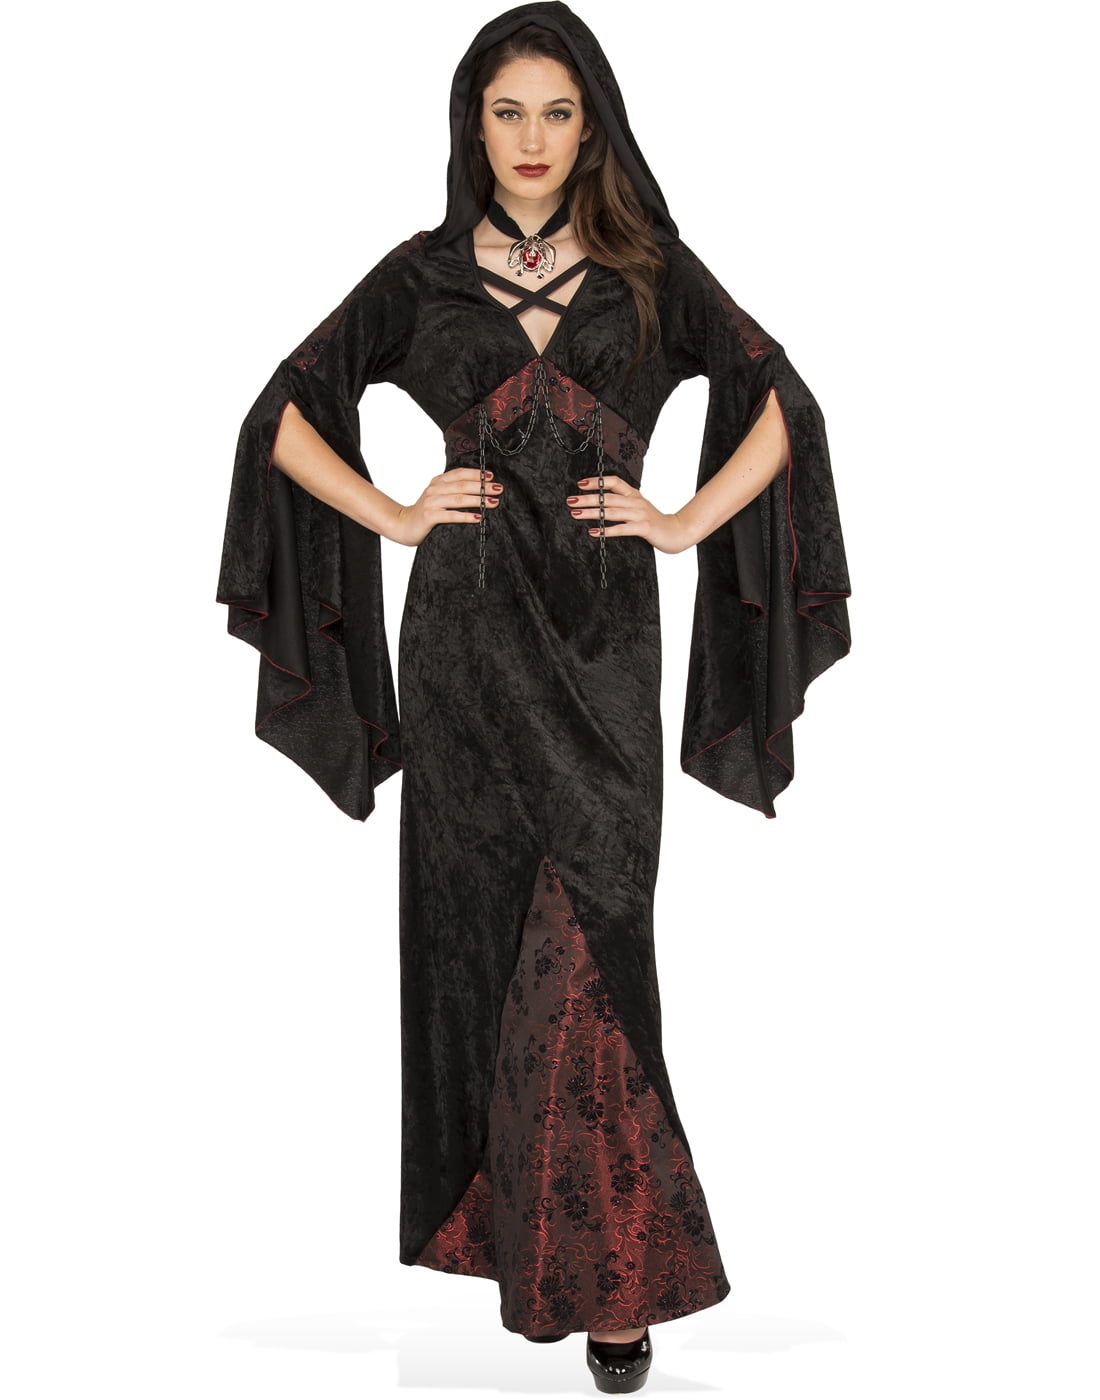 Dark Damsel Women Victorian Gothic Vampire Witch Halloween Costume ...